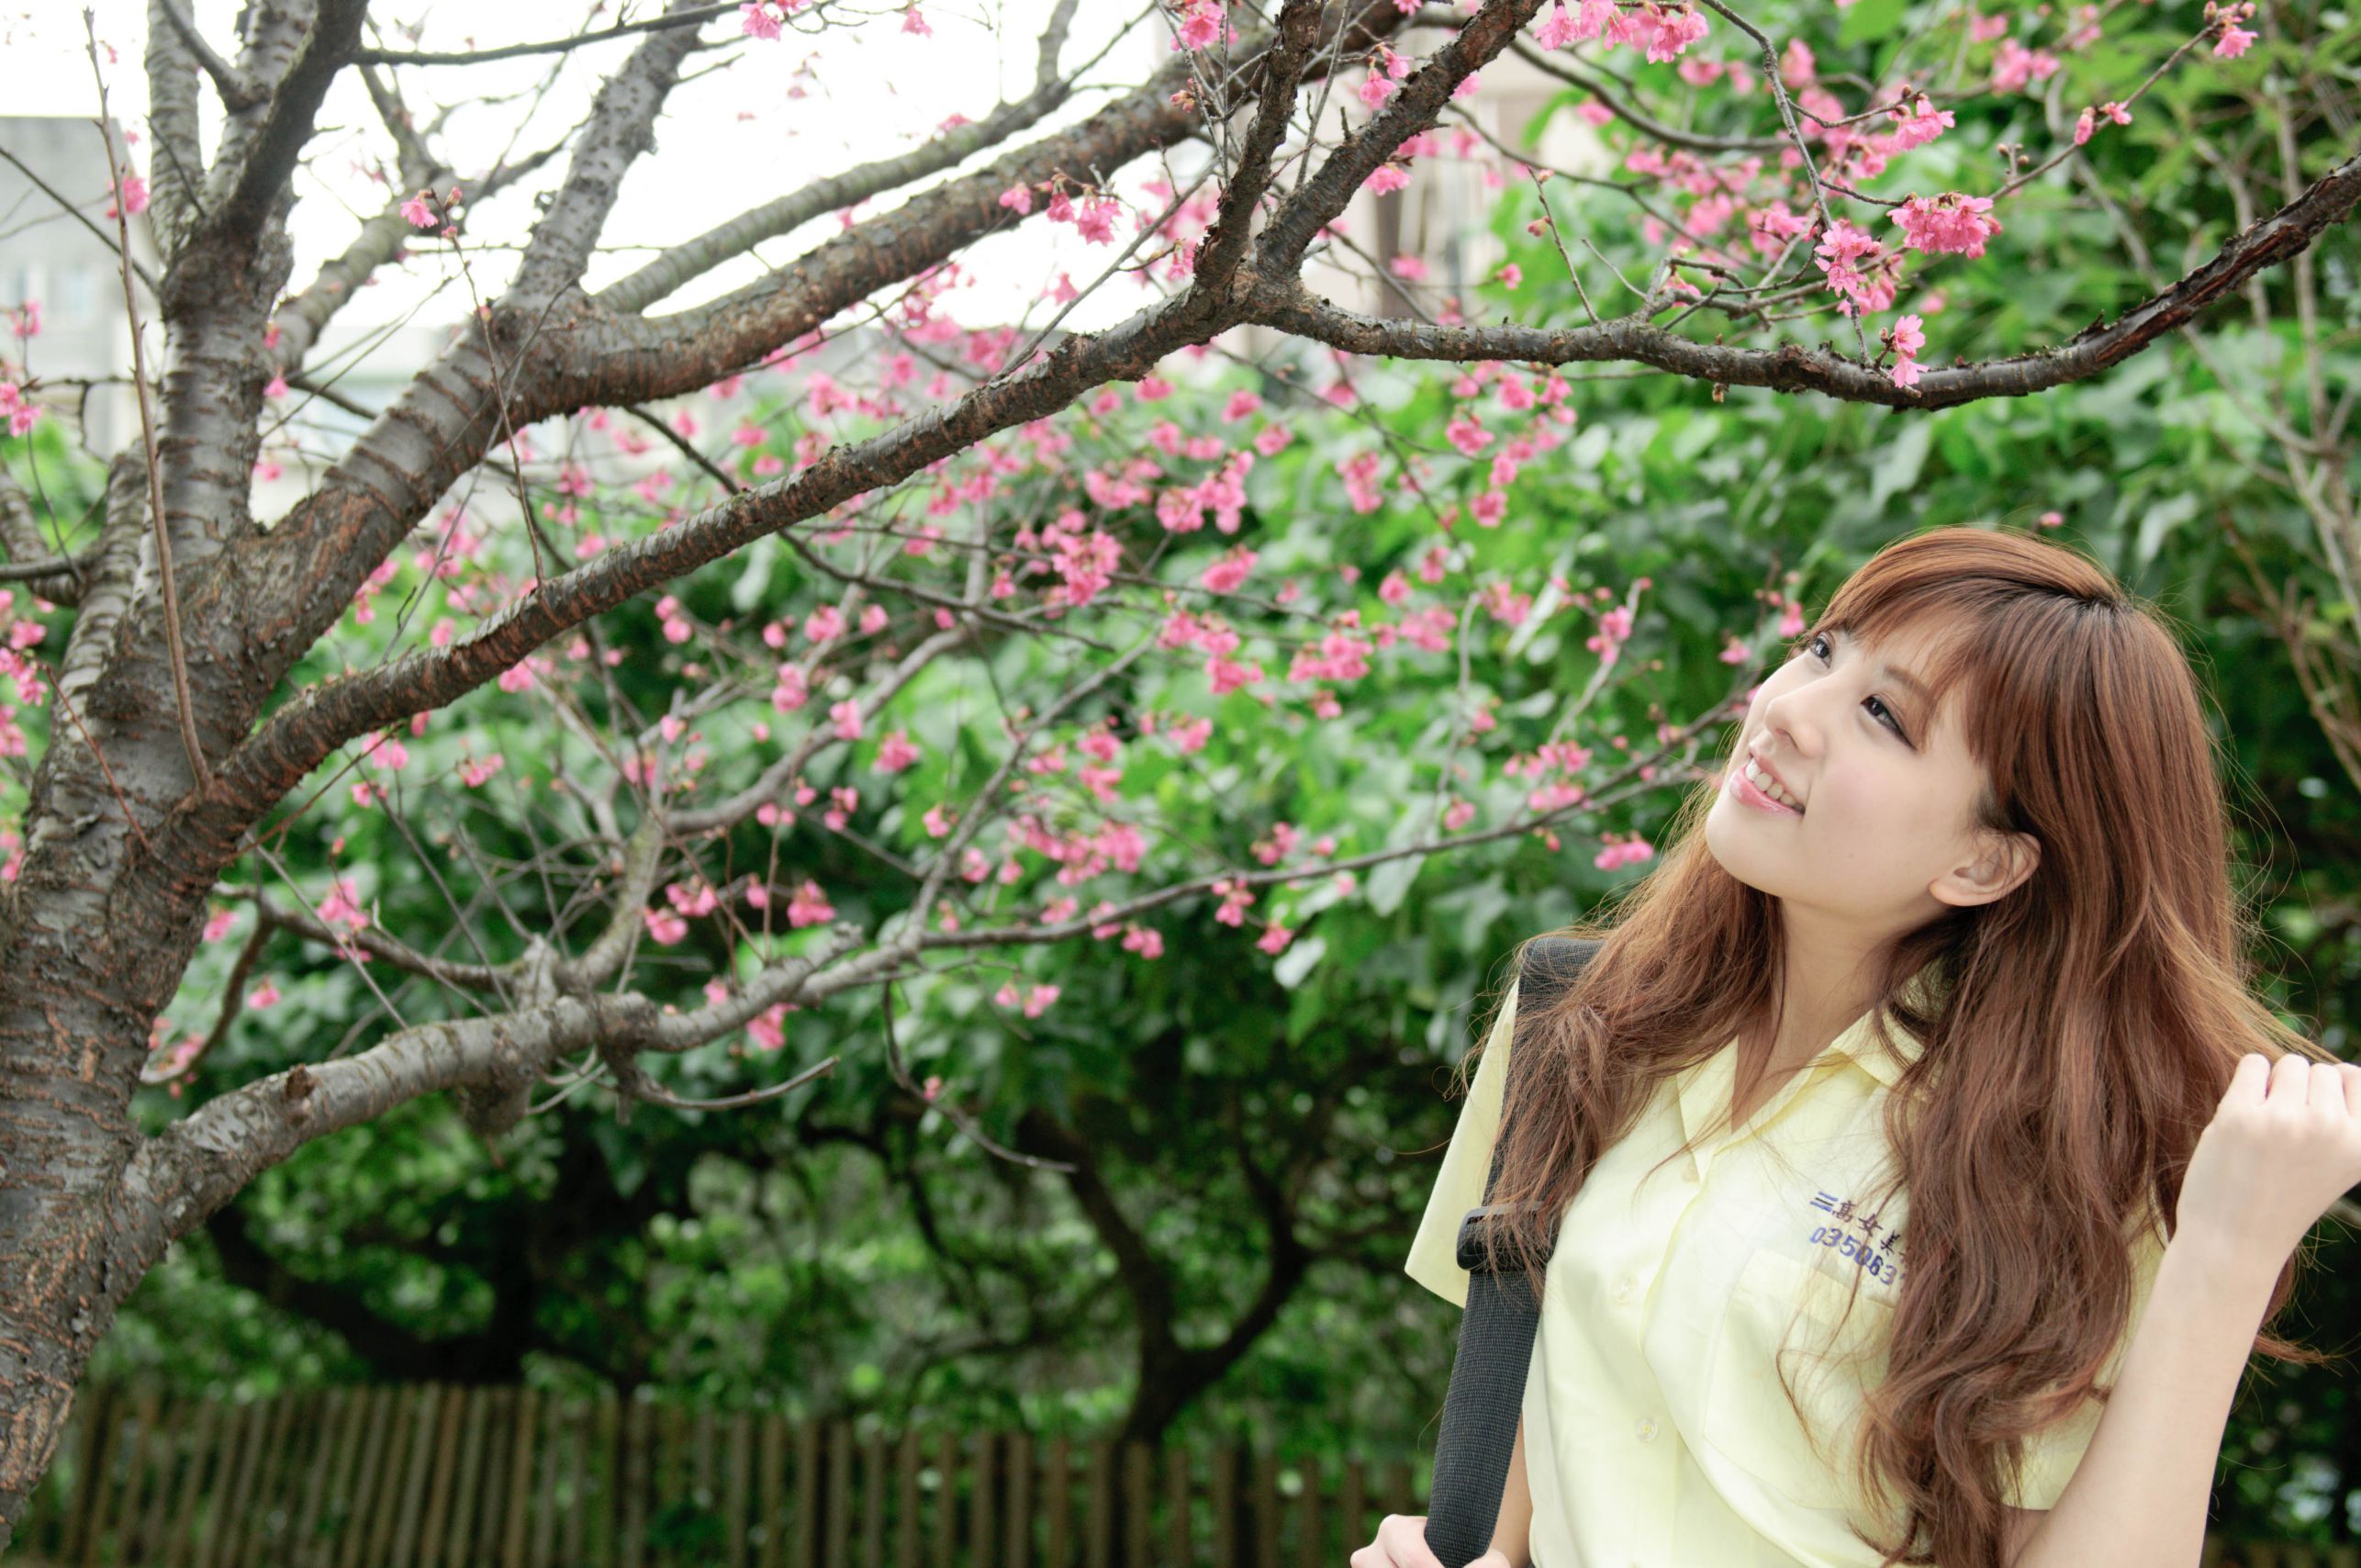 台湾美女kate小米 - 公园街拍甜美写真